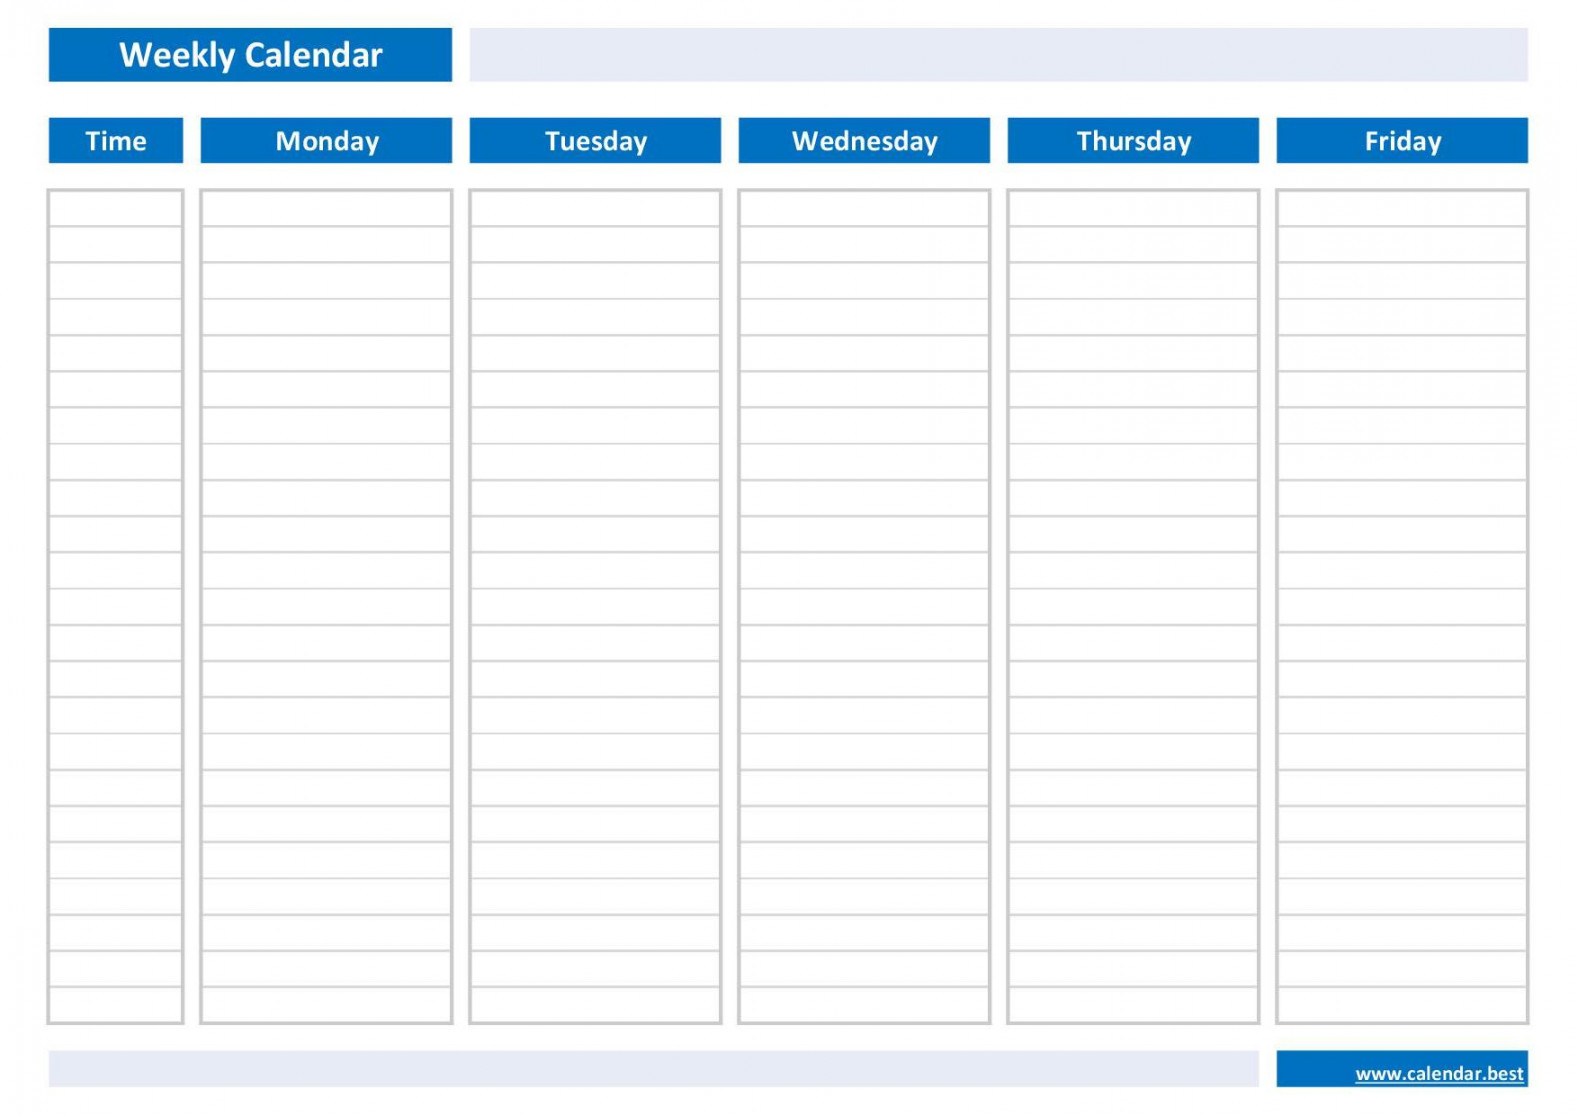 Weekly calendar, weekly schedule -Calendar